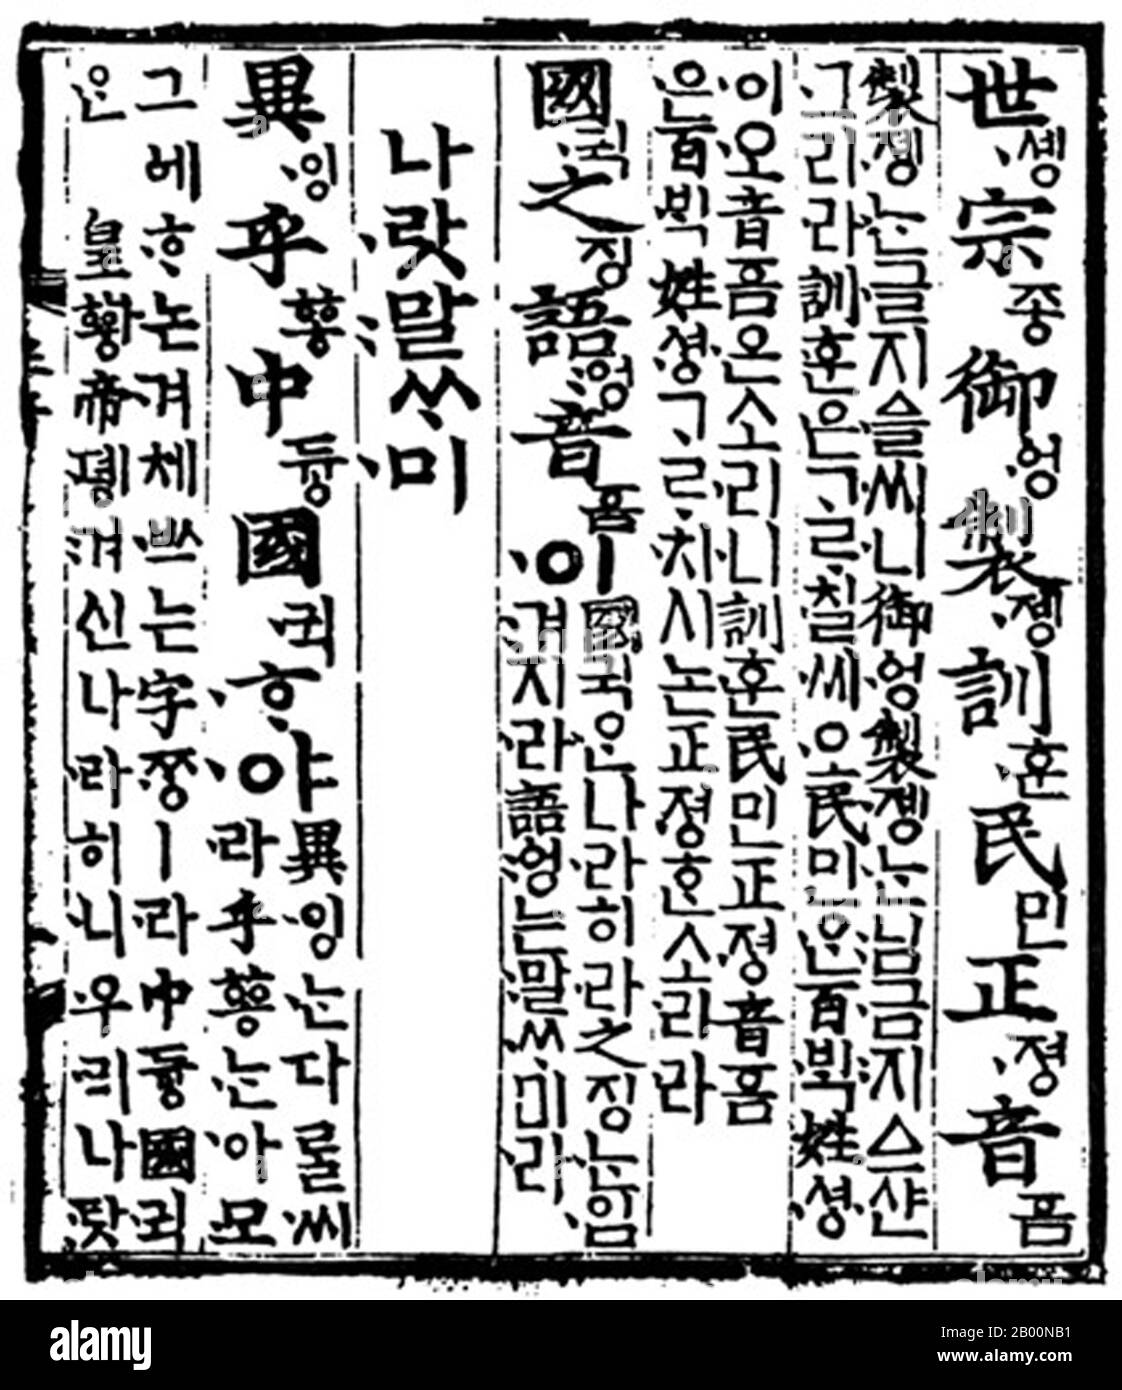 Corea: Hangul script: Una pagina dell'Hunmin Jeongeum Eonhae, una traduzione parziale di Hunmin Jeongeum, la promulgazione originale di Hangul, 1443. Hangul è l'alfabeto nativo della lingua coreana, distinto dai sistemi logografici Hanja e fonetici. È stato creato a metà del XV secolo, ed è ora il copione ufficiale sia della Corea del Nord che della Corea del Sud, essendo co-ufficiale nella Prefettura autonoma coreana Yanbian della Provincia di Jilin, Cina. Hangul è un alfabeto fonemico organizzato in blocchi sillabici. Ogni blocchetto è composto da almeno due delle 24 lettere di Hangul (jamo). Foto Stock